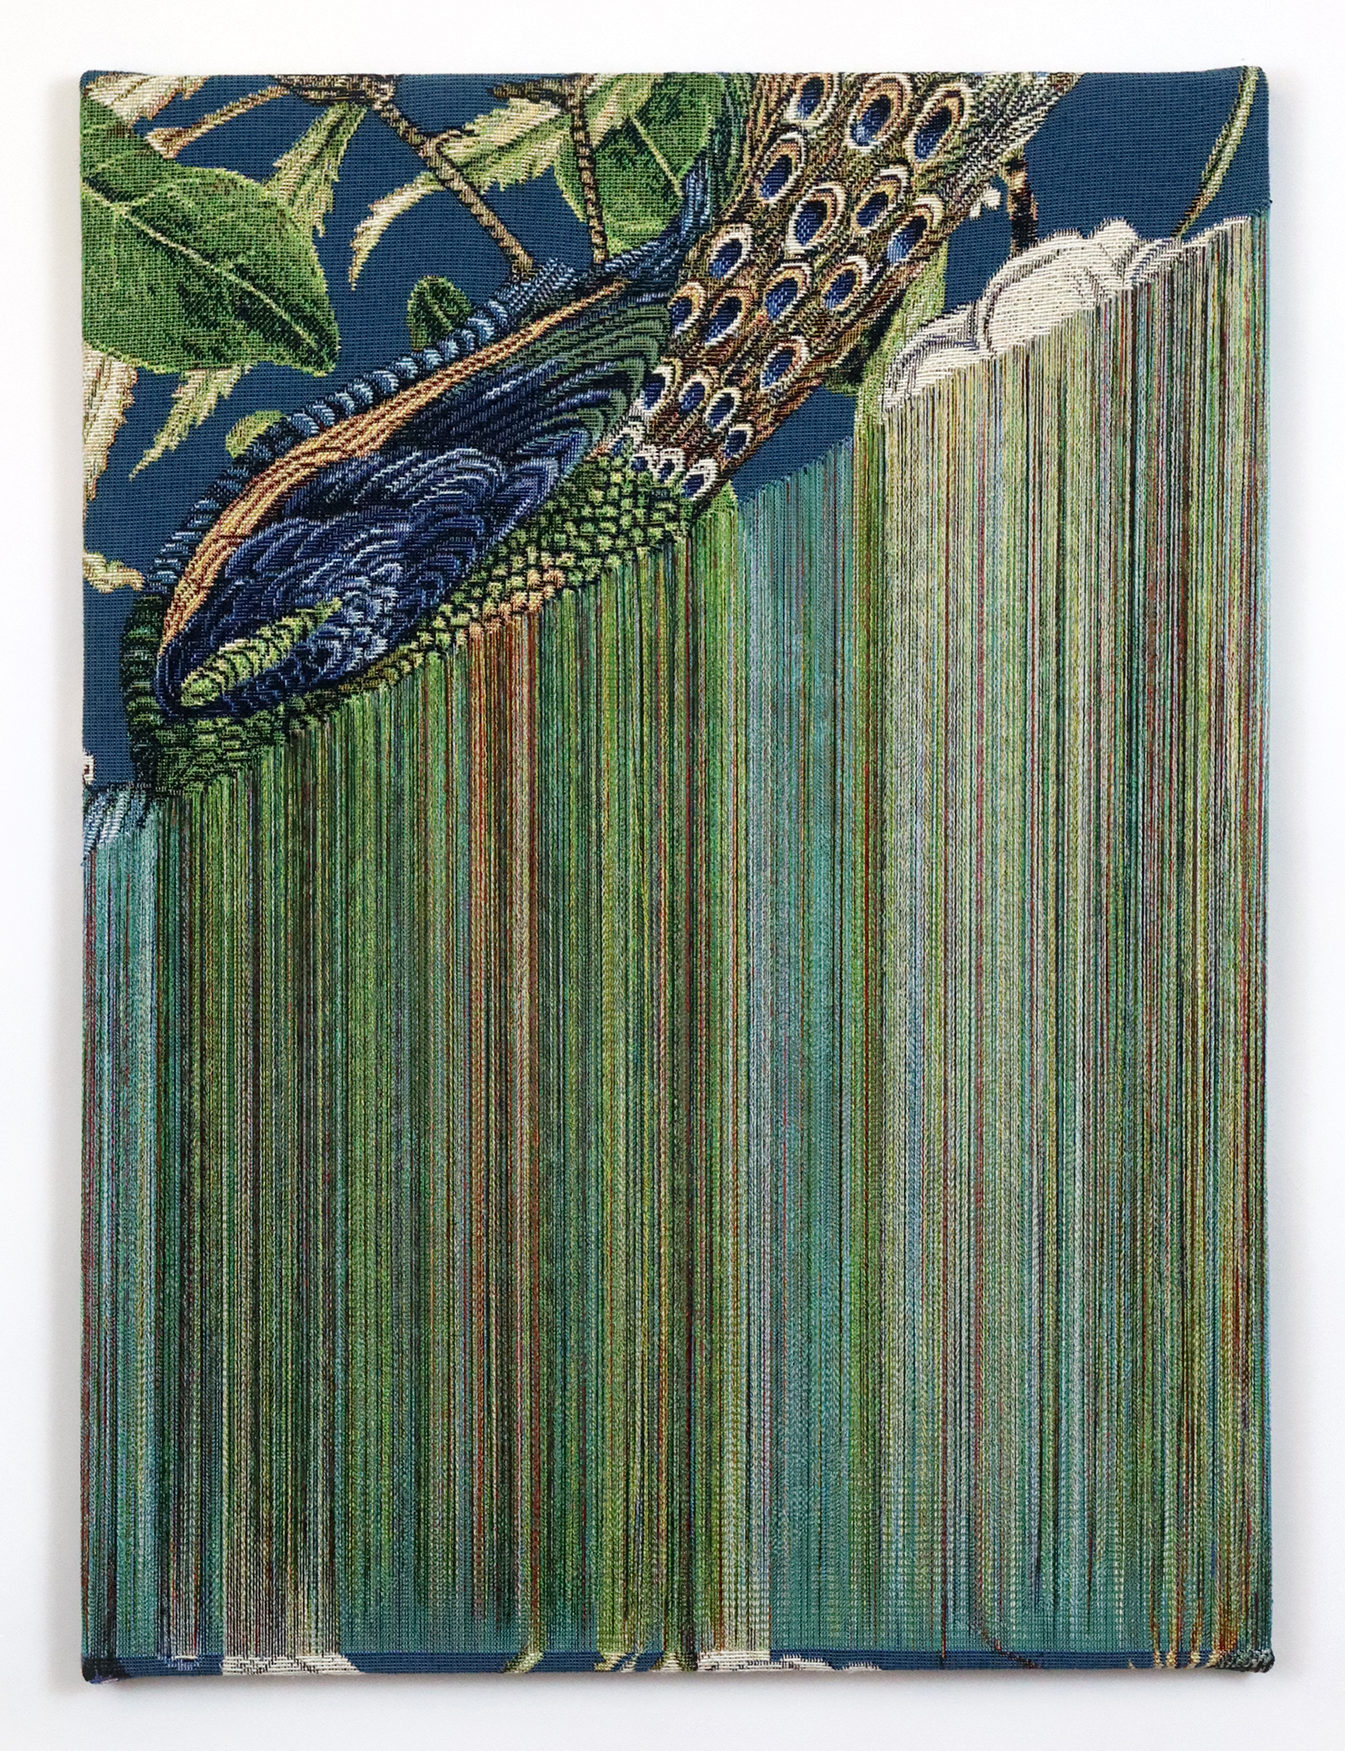 Fragile Surface – Blue Peacock 8